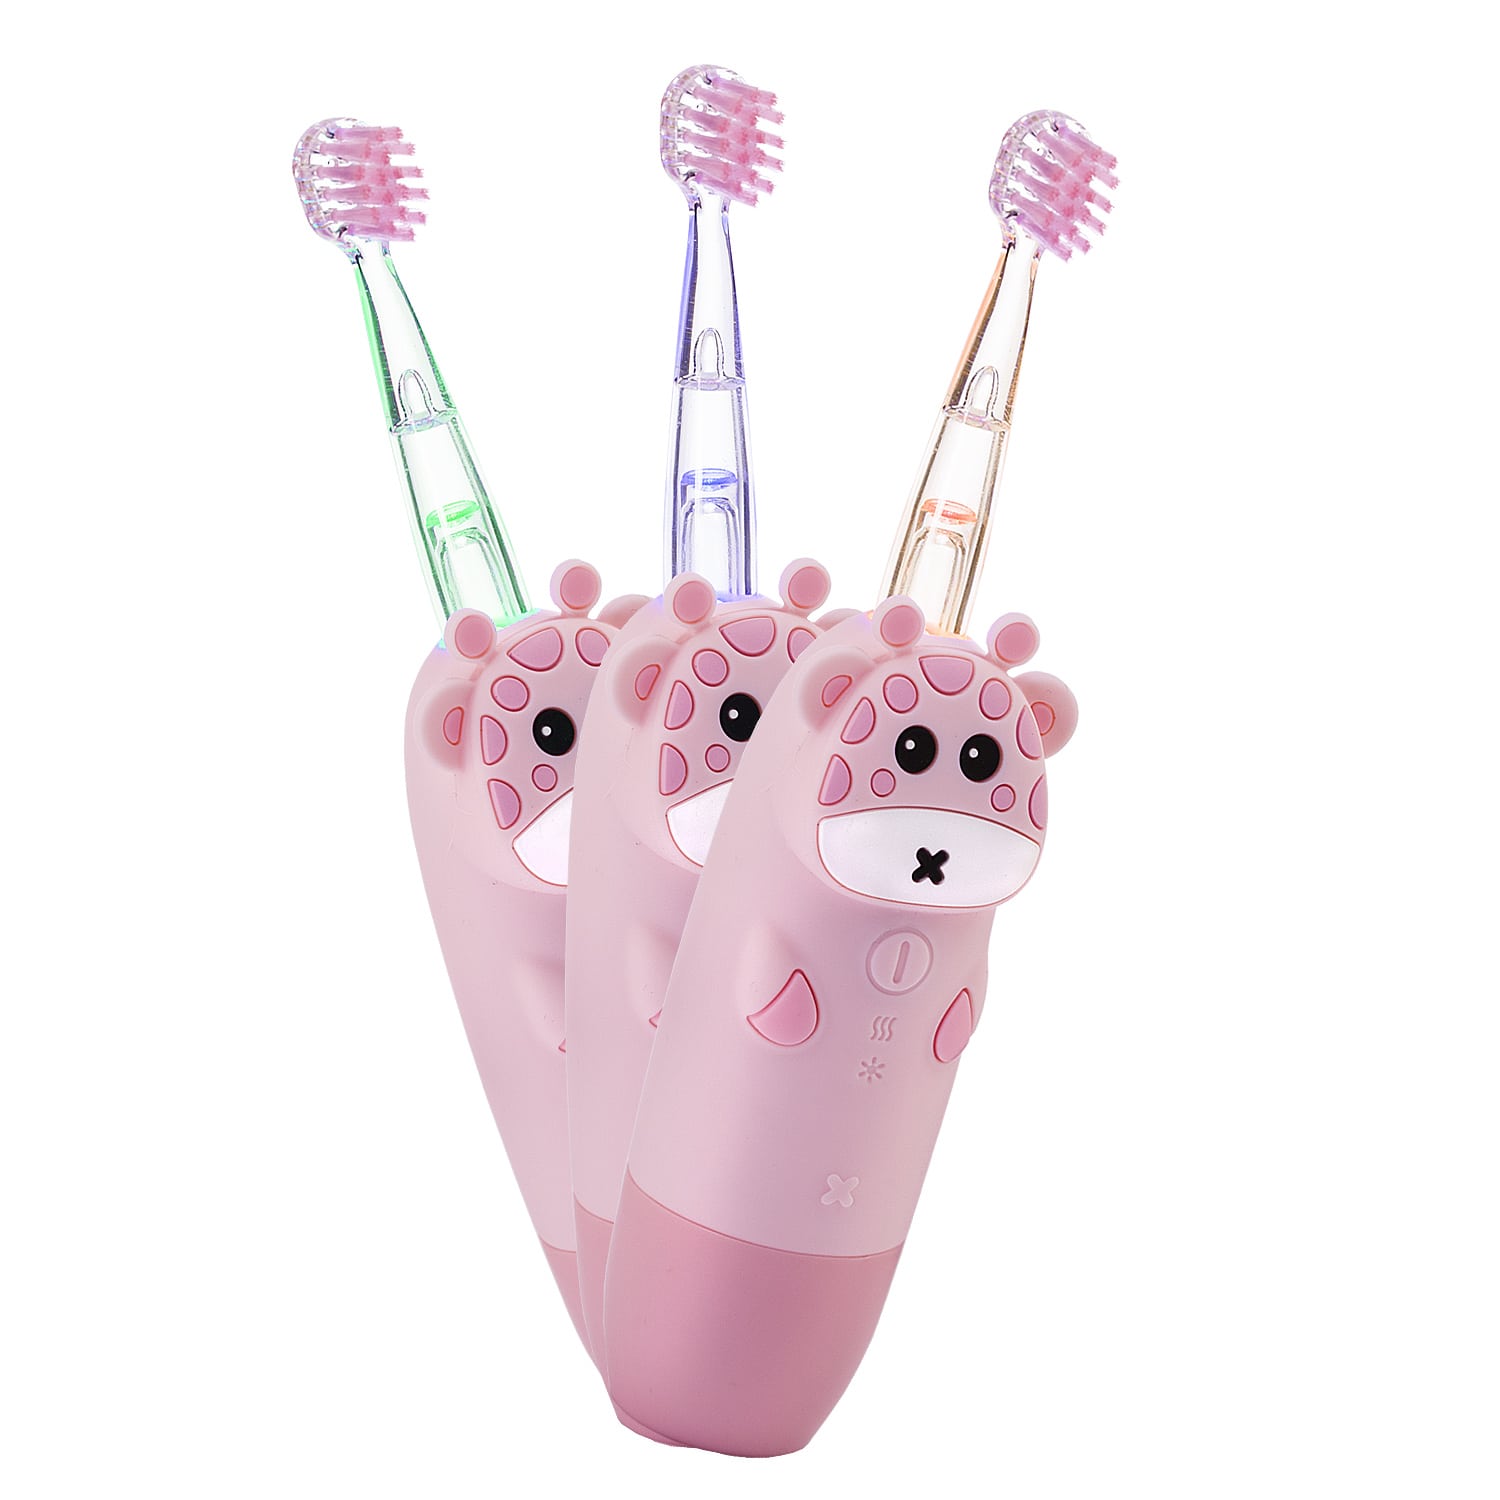 REVYLINE Детская электрическая звуковая зубная щетка RL 025 Baby 1+, розовая, 1 шт (REVYLINE, Электрические зубные щетки)